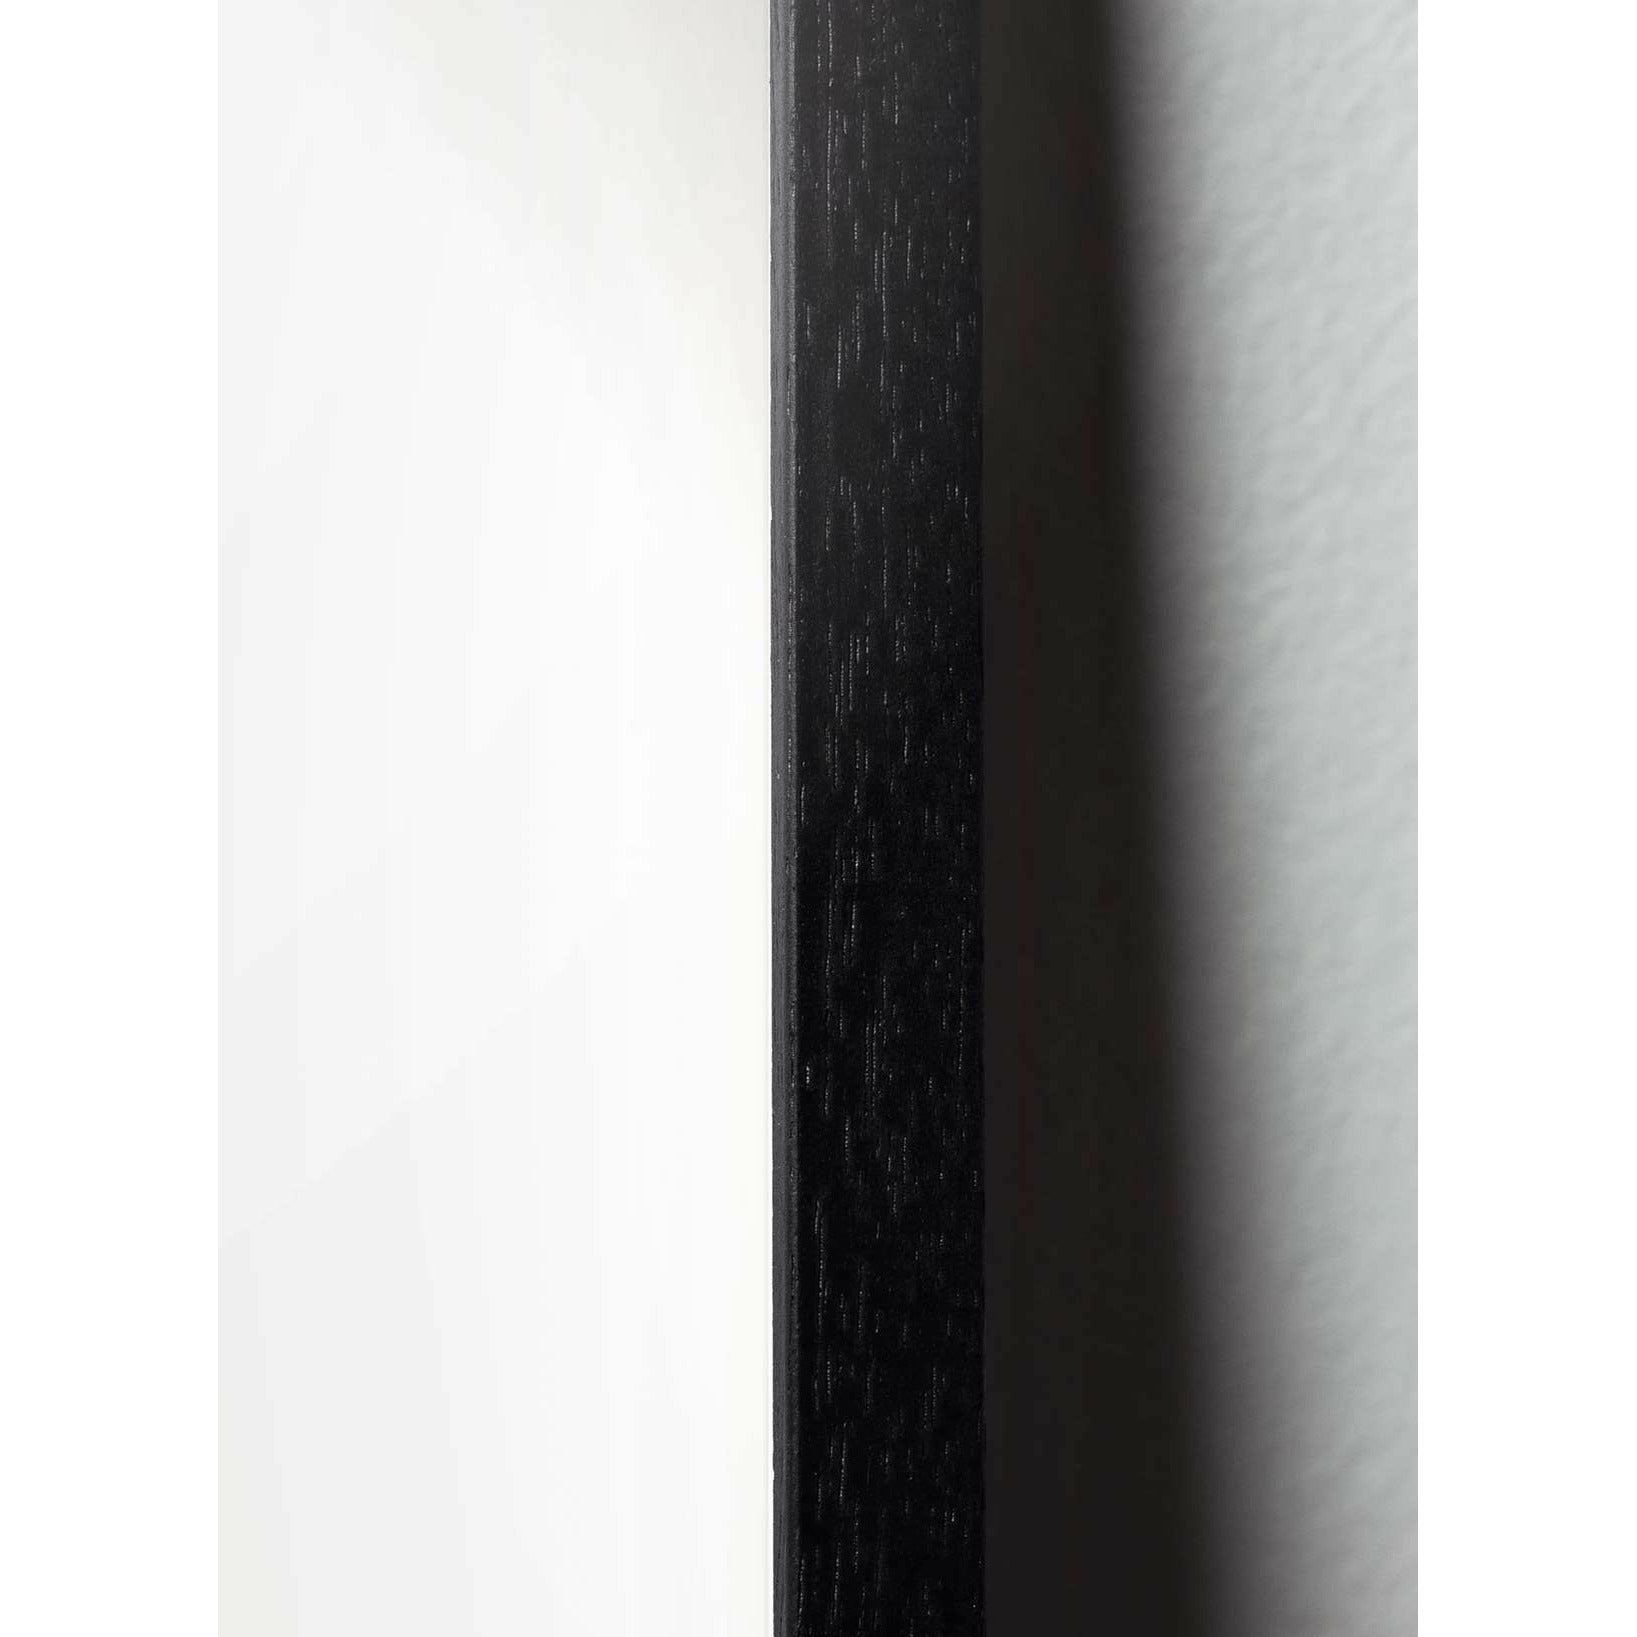 Hugarfóstur maur klassísk veggspjald, ramma í svörtum lakkuðum viði 50x70 cm, sandlitaður bakgrunnur